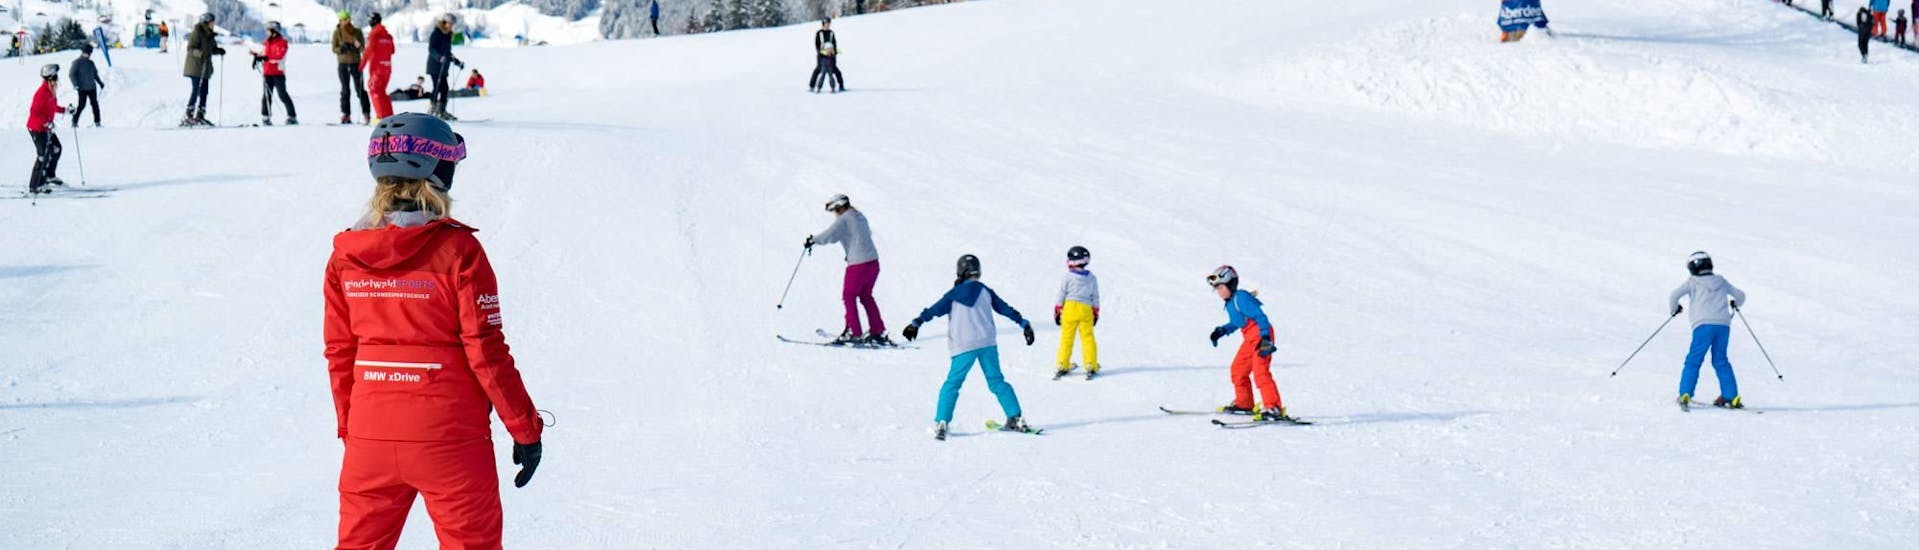 Lezioni private di sci per bambini a partire da 5 anni principianti assoluti.